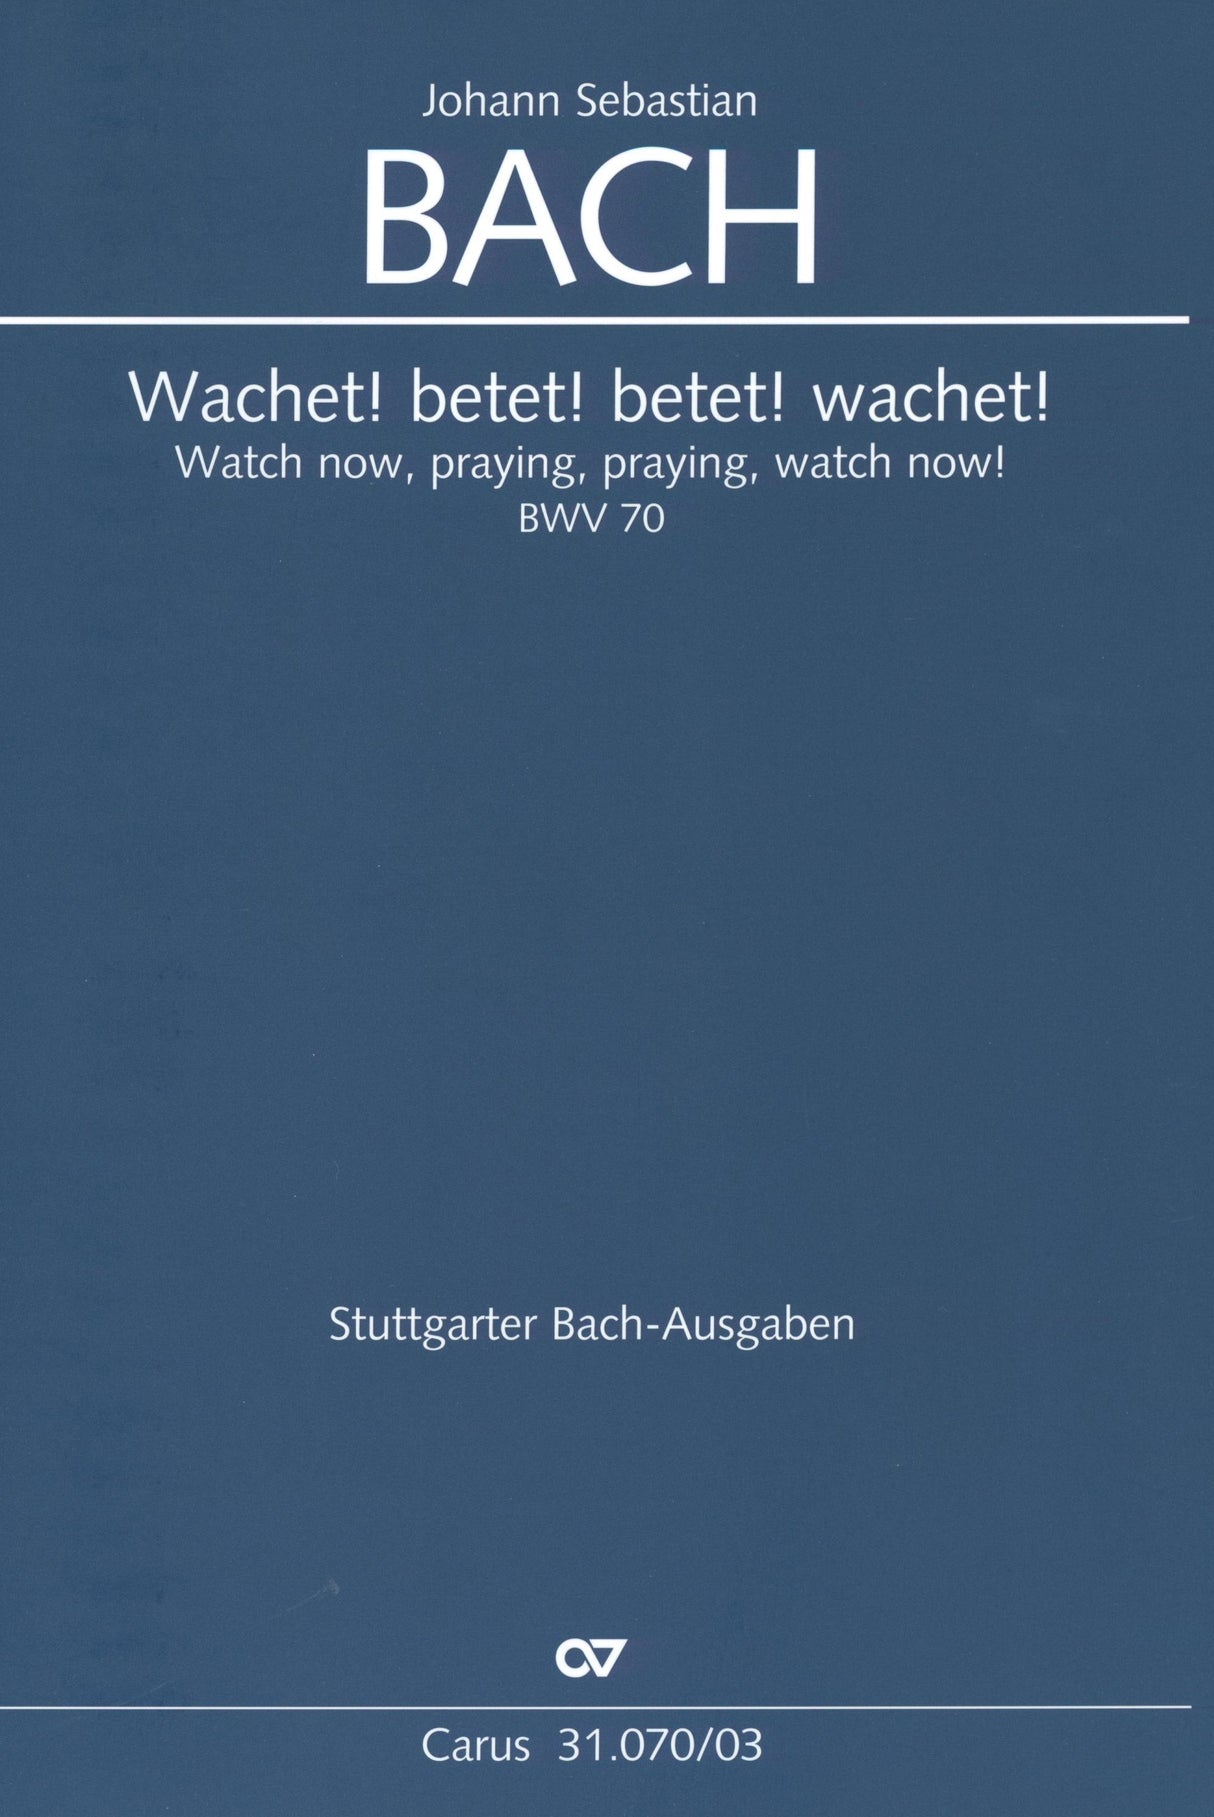 Bach: Wachet! betet! betet! wachet!, BWV 70